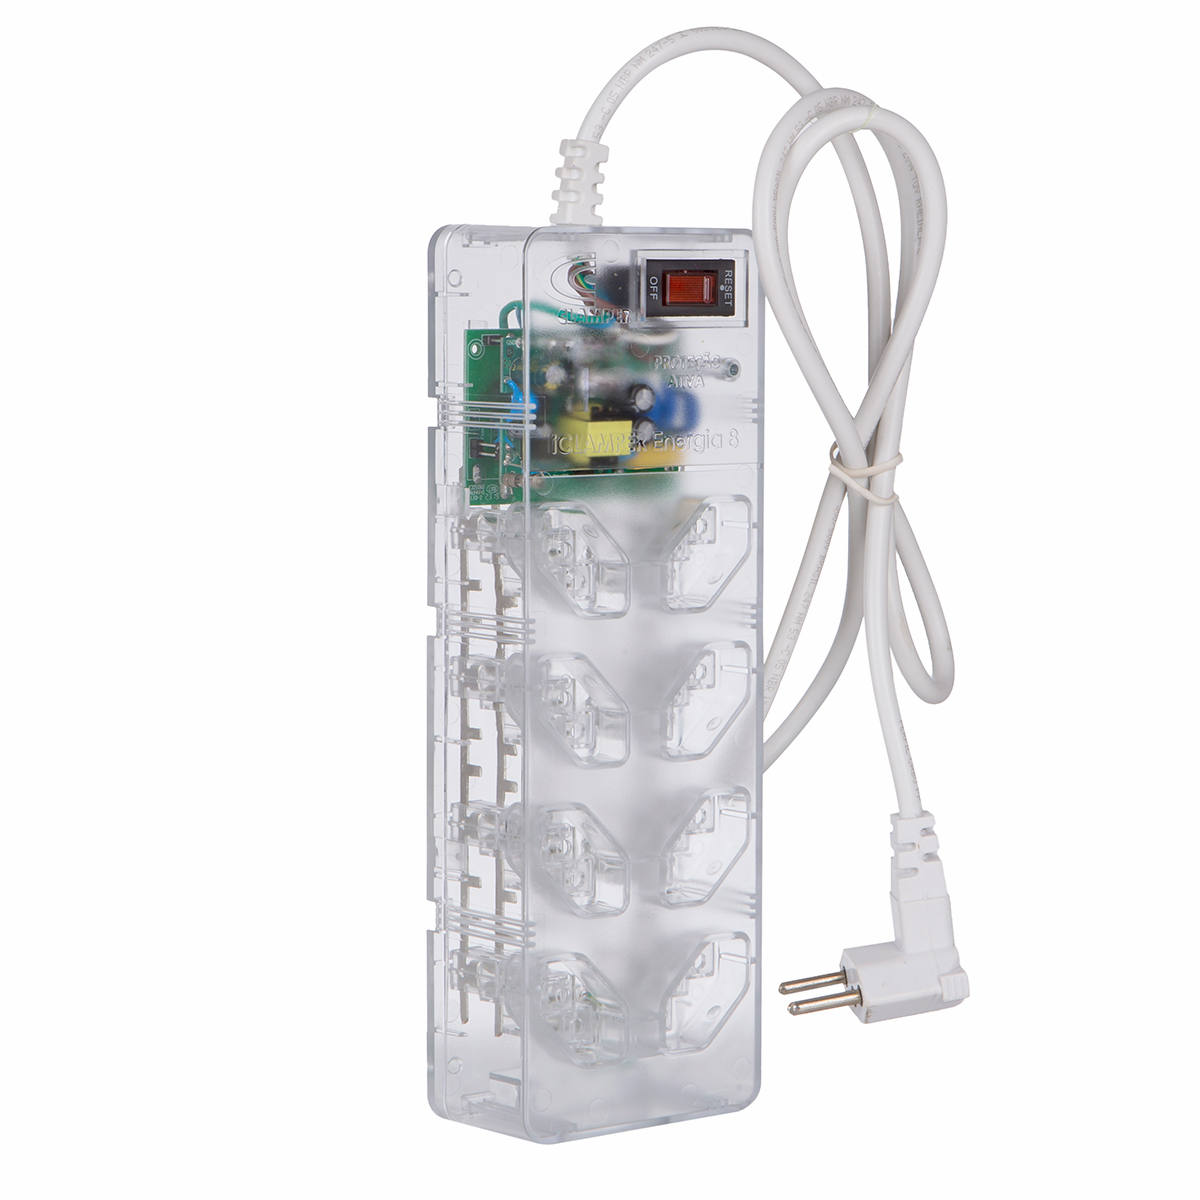 DPS Clamper + Filtro de Linha Bivolt 8 Tomadas Proteção Total contra Surtos iClamper Energia 8 Transparente